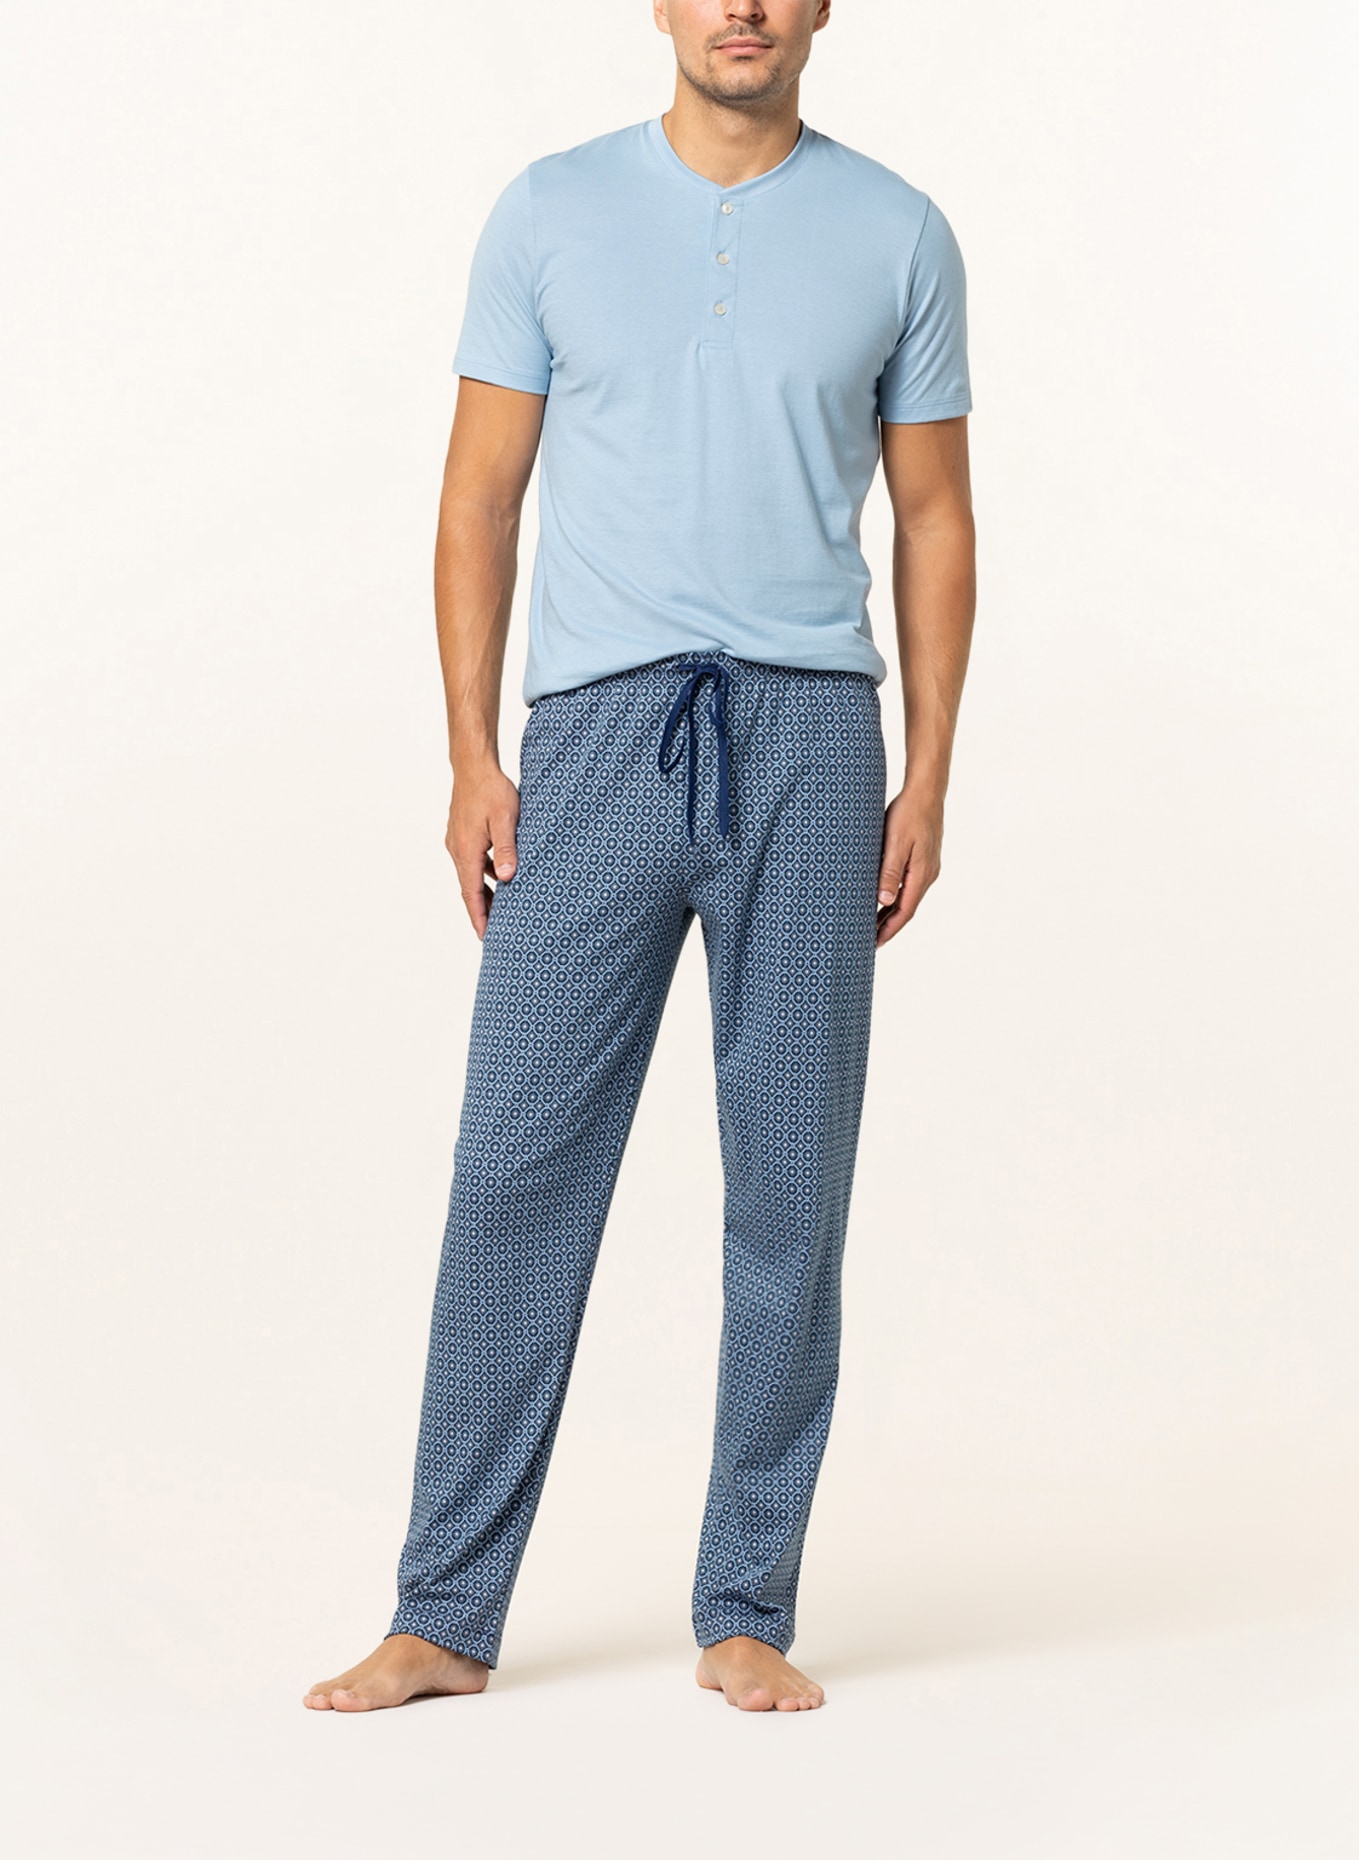 mey Lounge pants series VESANTO, Color: DARK BLUE/ LIGHT BLUE (Image 2)